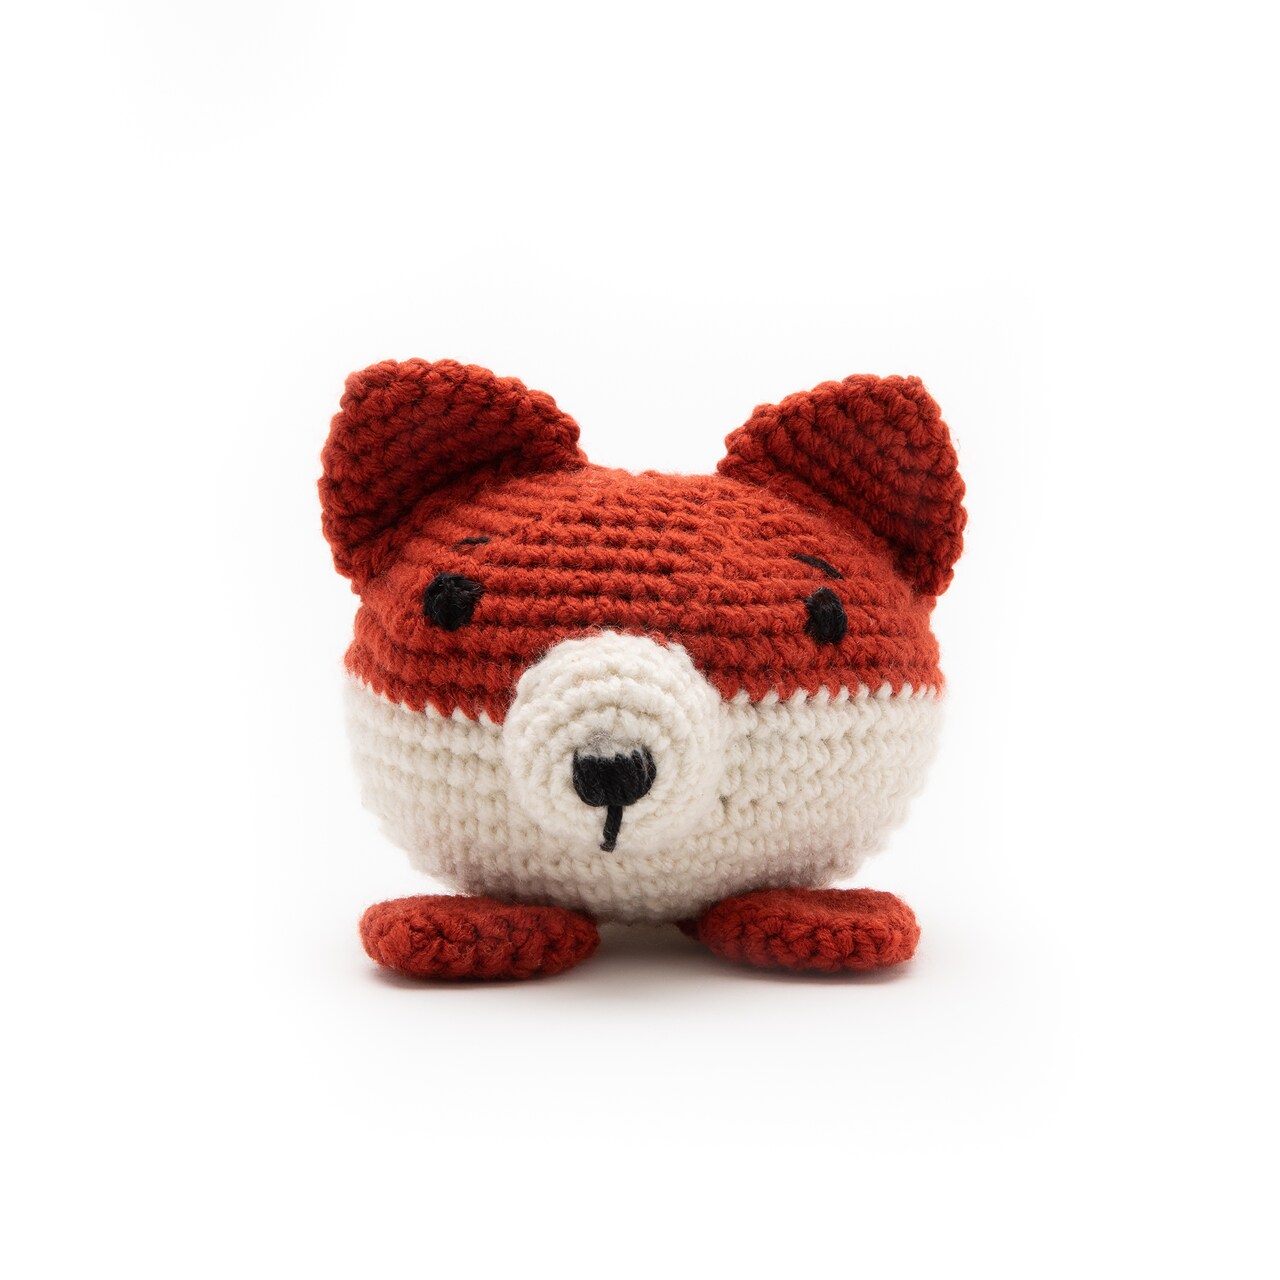 Crochet Amigurumi - Little Fox with Loops & Threads